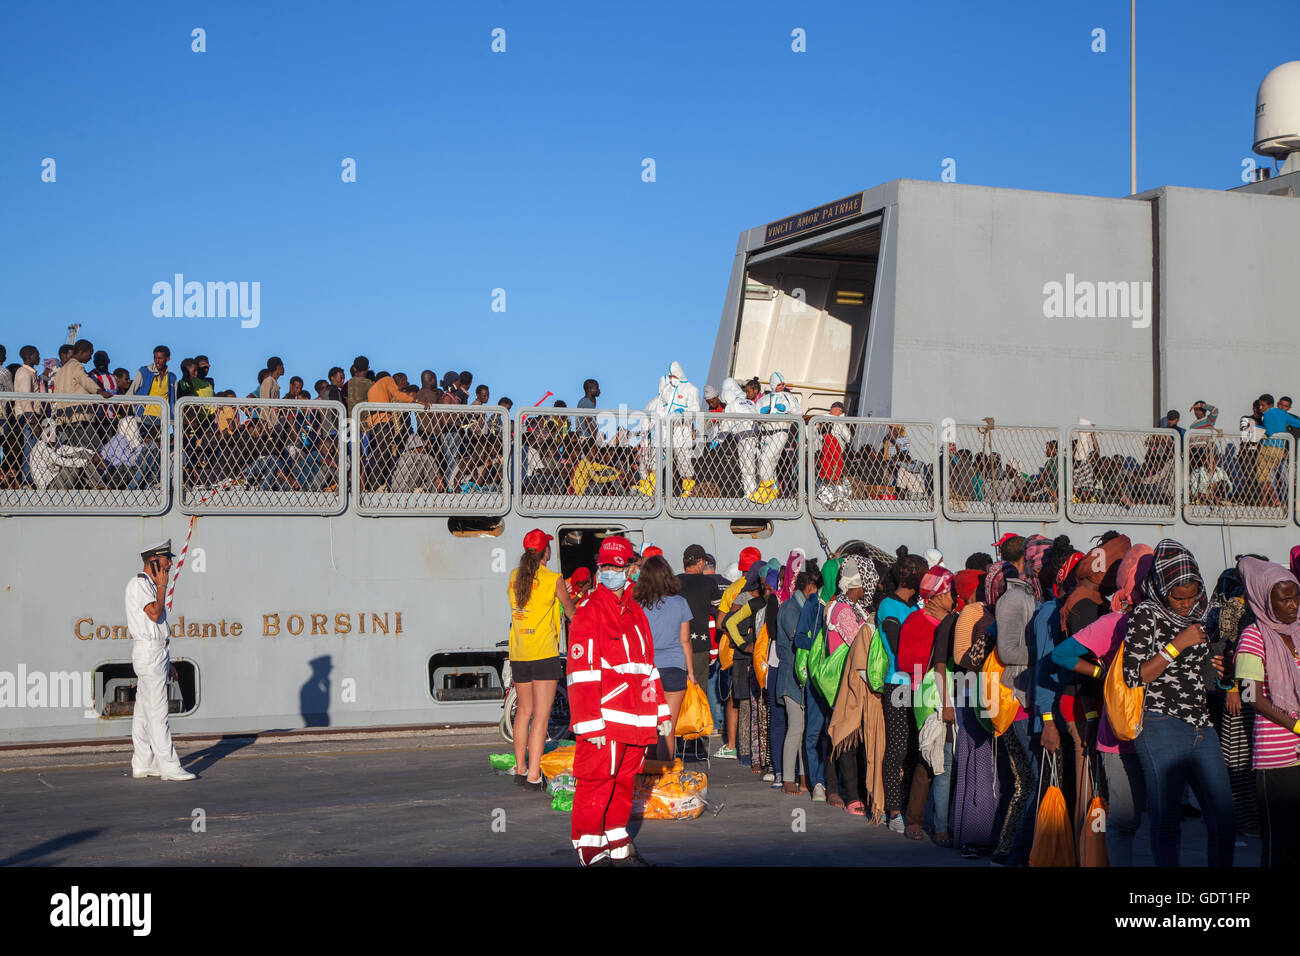 Palermo, Italia. Il 20 luglio, 2016. Il Comandante Borsini, un italiano di nave da guerra, arrivati a Palermo il 20 luglio 2016 con un comunicato 890 rifugiati a bordo. Credito: Antonio Melita/Alamy Live News Foto Stock